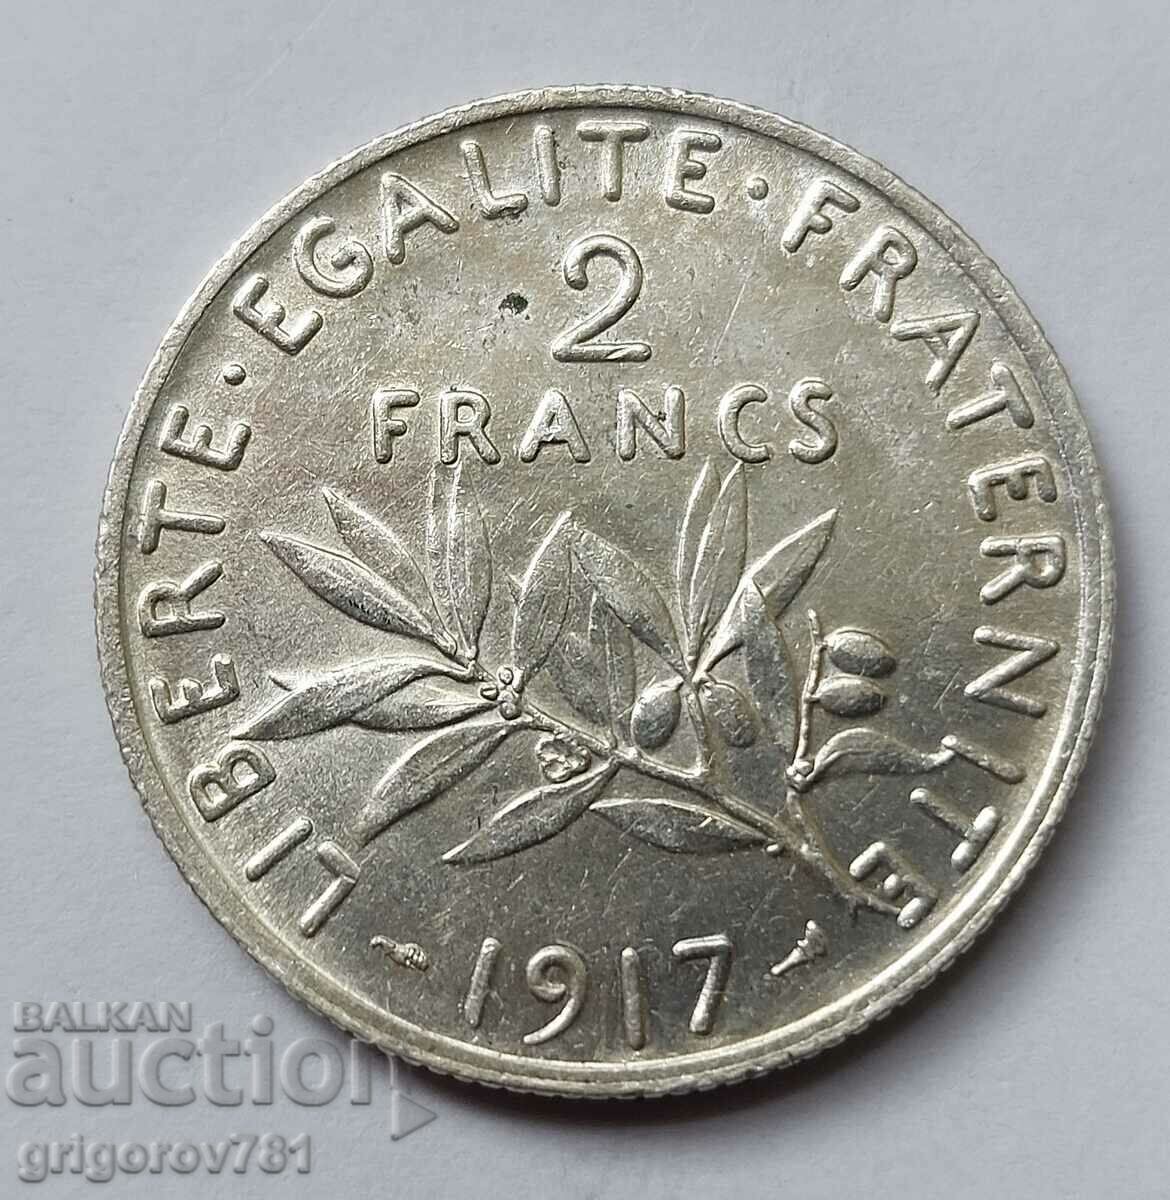 2 Franci Argint Franta 1917 - Moneda de argint #103